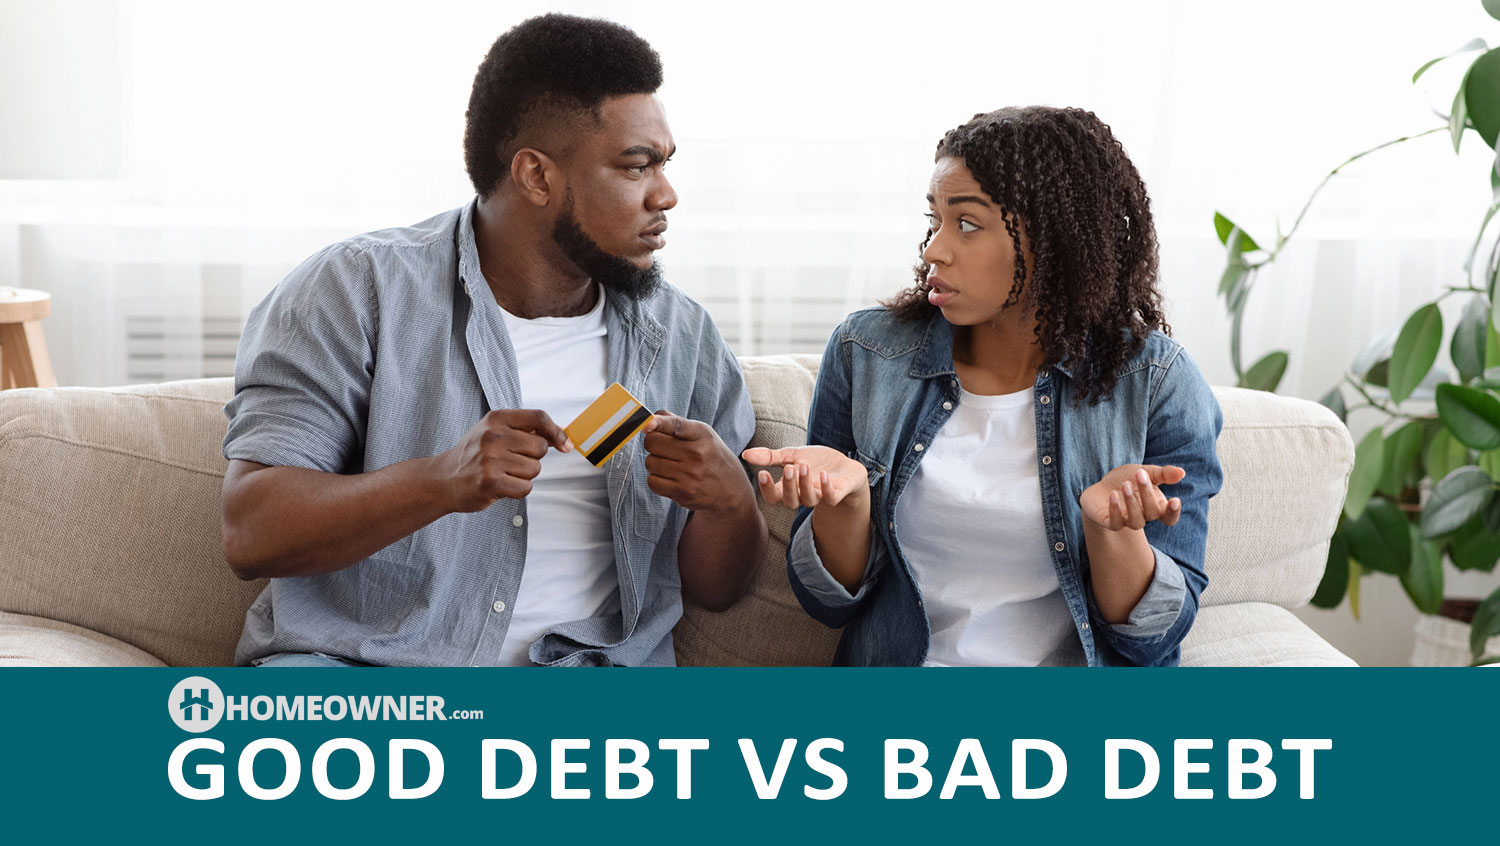 What Is Good Debt vs Bad Debt?